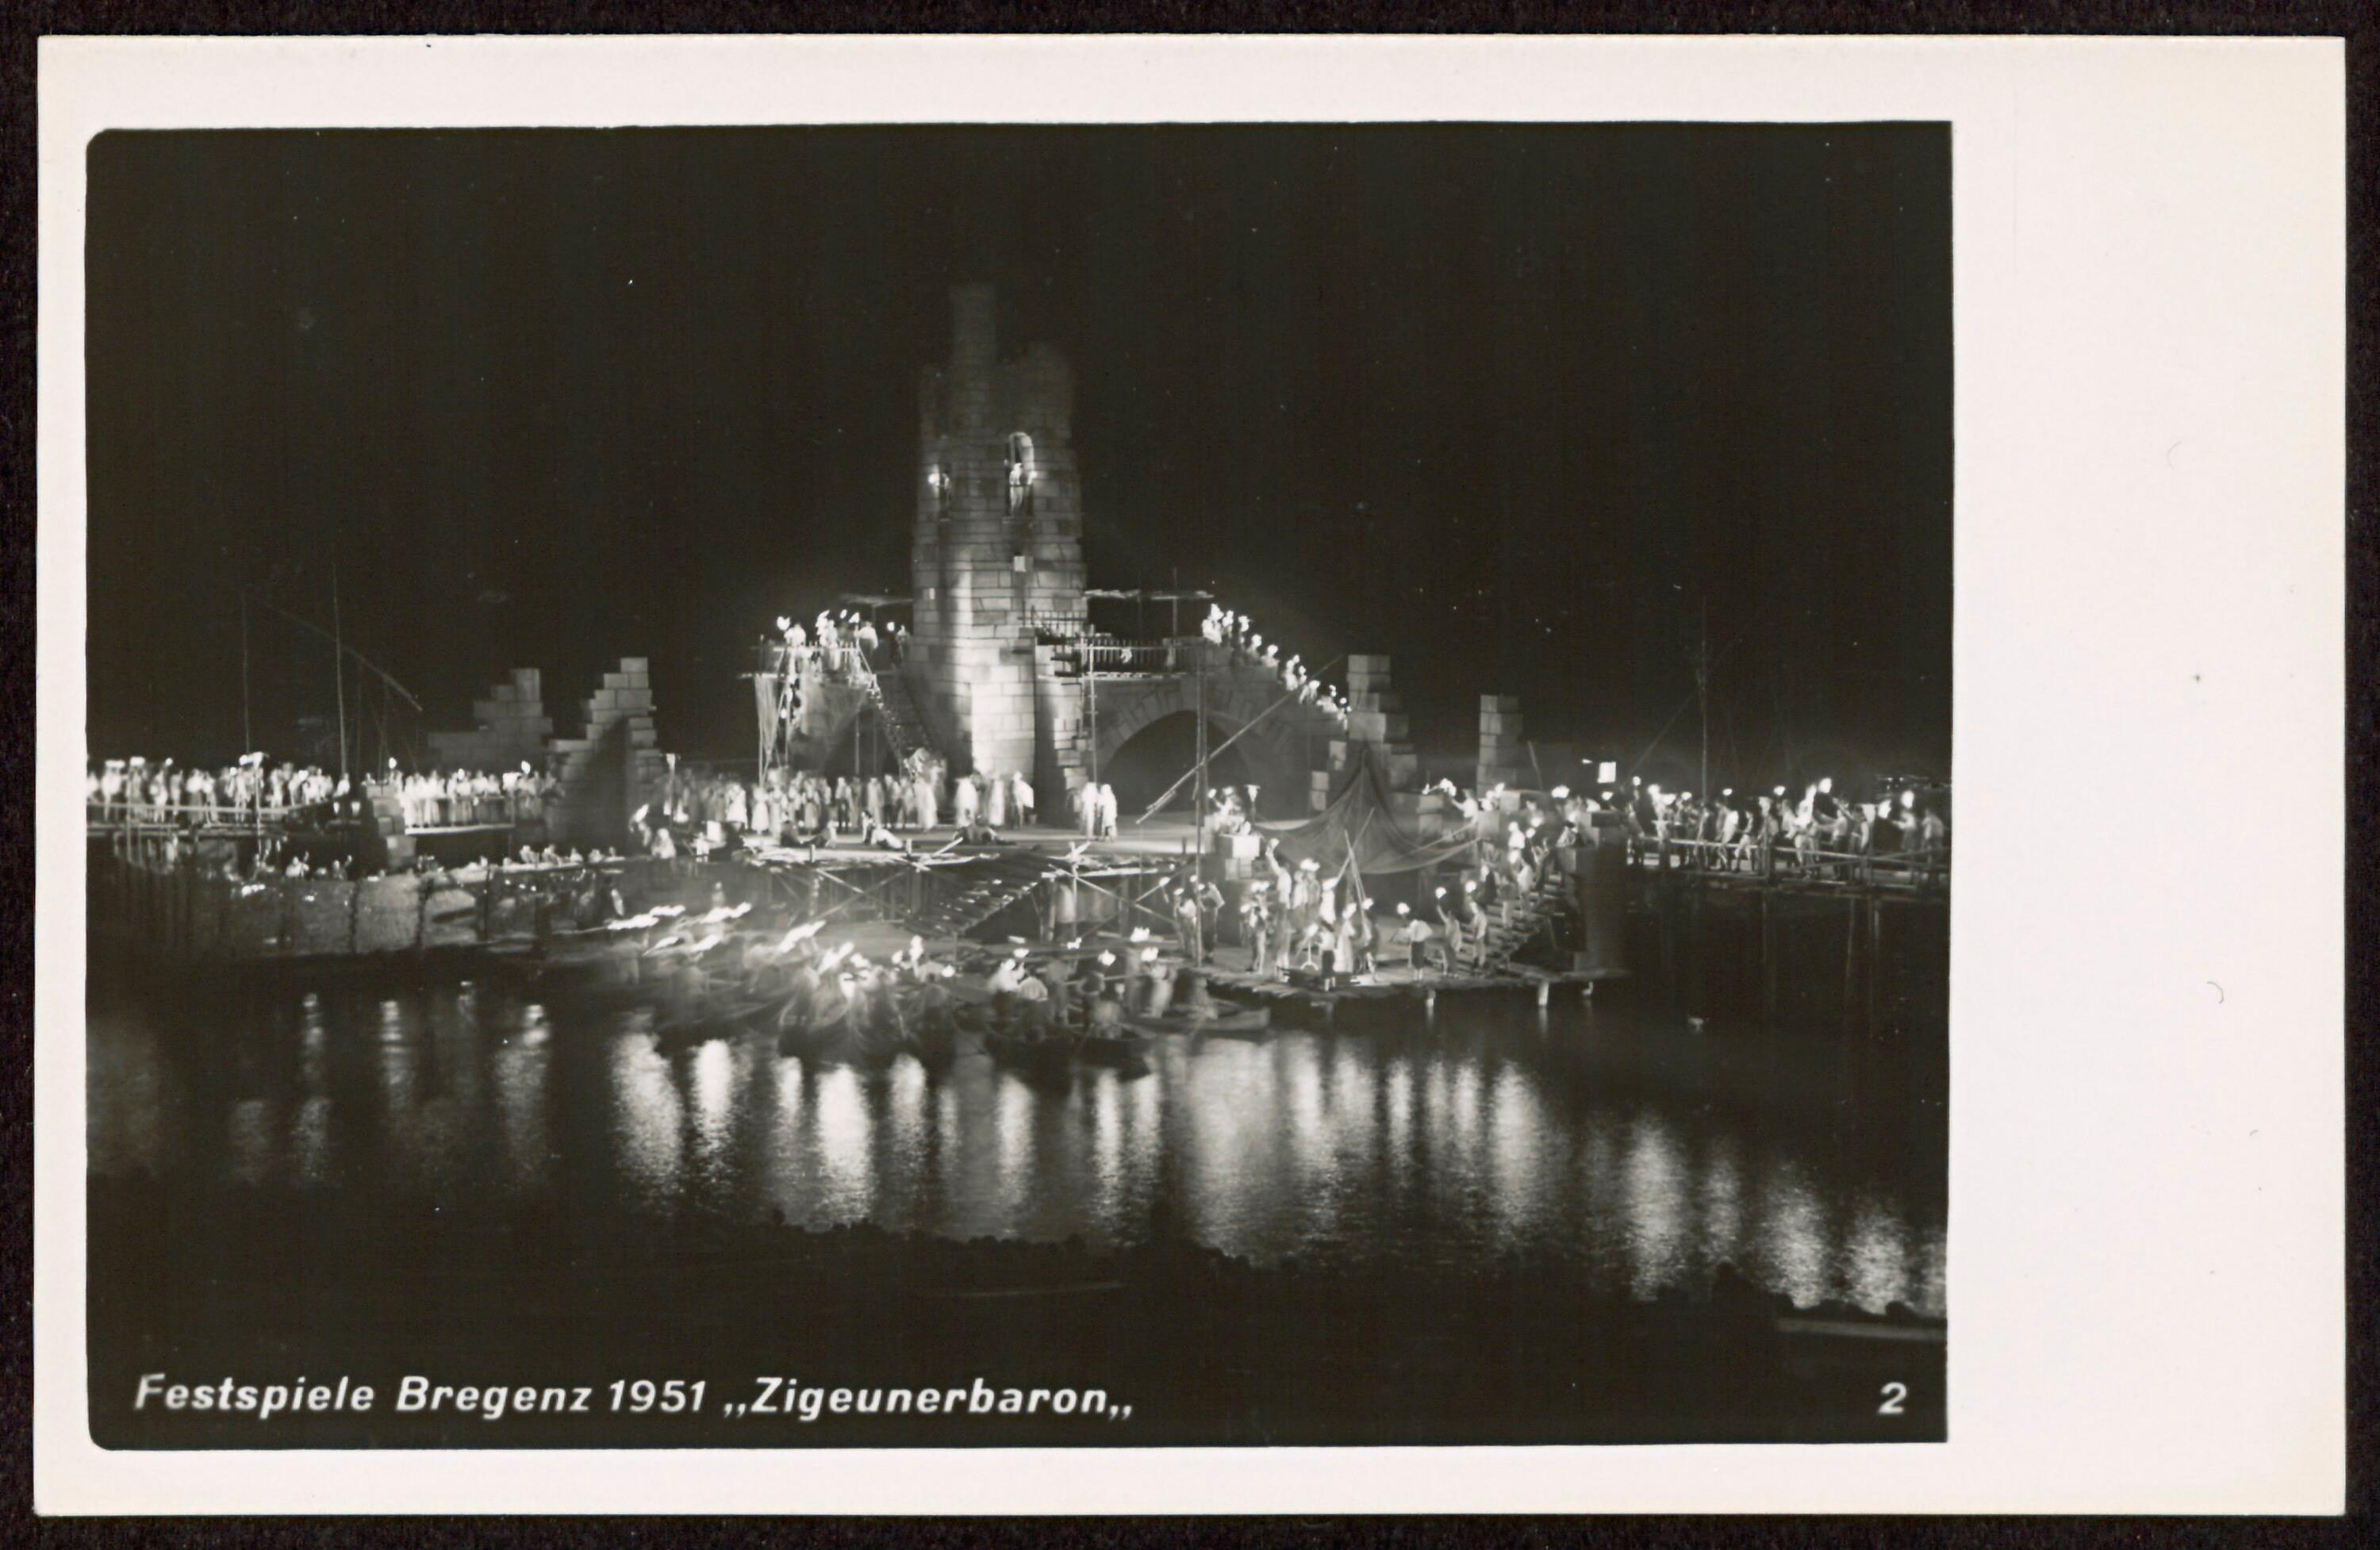 Festspiele Bregenz 1951 